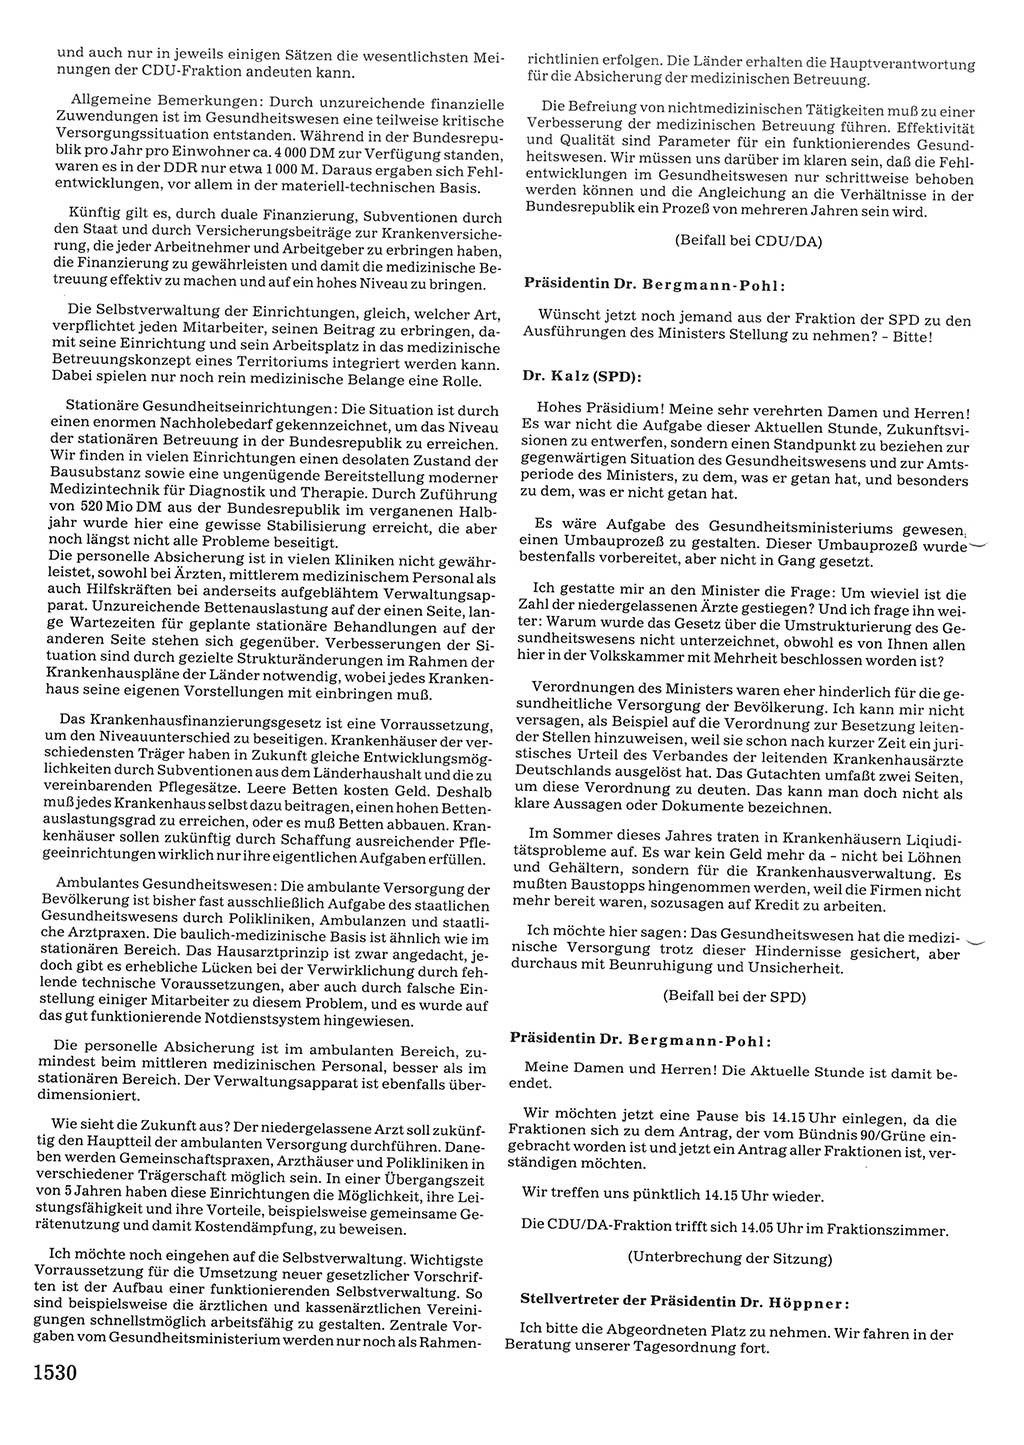 Tagungen der Volkskammer (VK) der Deutschen Demokratischen Republik (DDR), 10. Wahlperiode 1990, Seite 1530 (VK. DDR 10. WP. 1990, Prot. Tg. 1-38, 5.4.-2.10.1990, S. 1530)